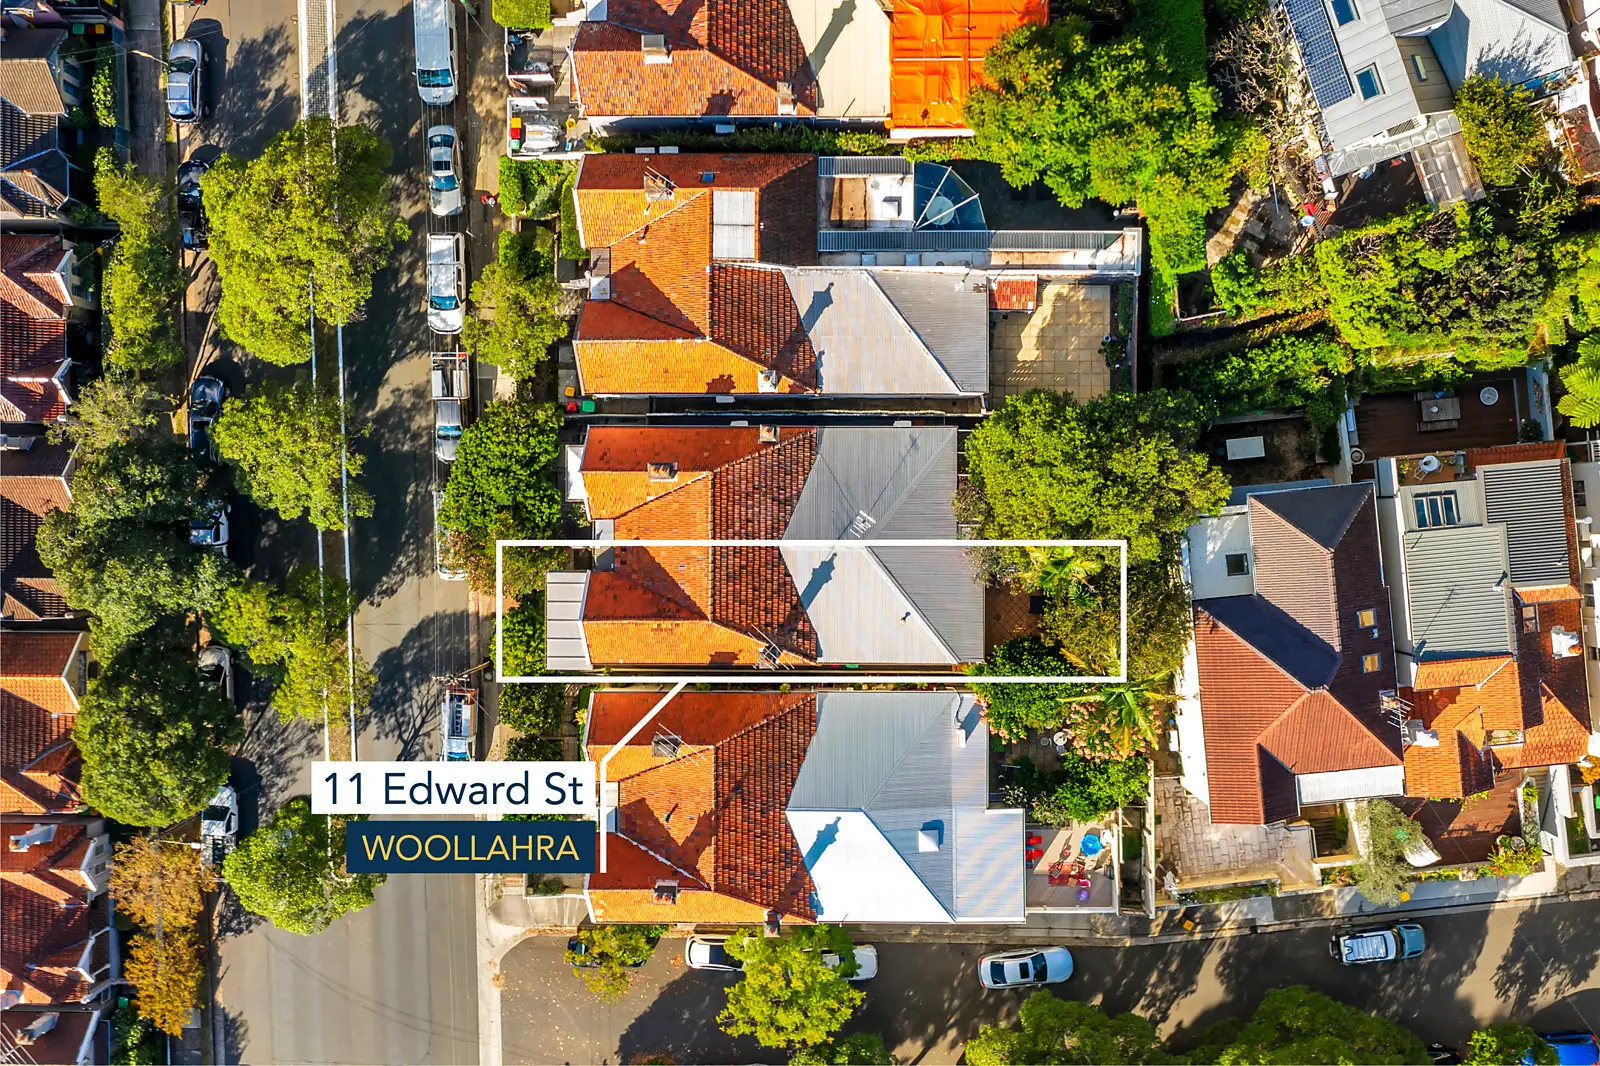 11 Edward Street, Woollahra Sold by Bradfield Badgerfox - image 1